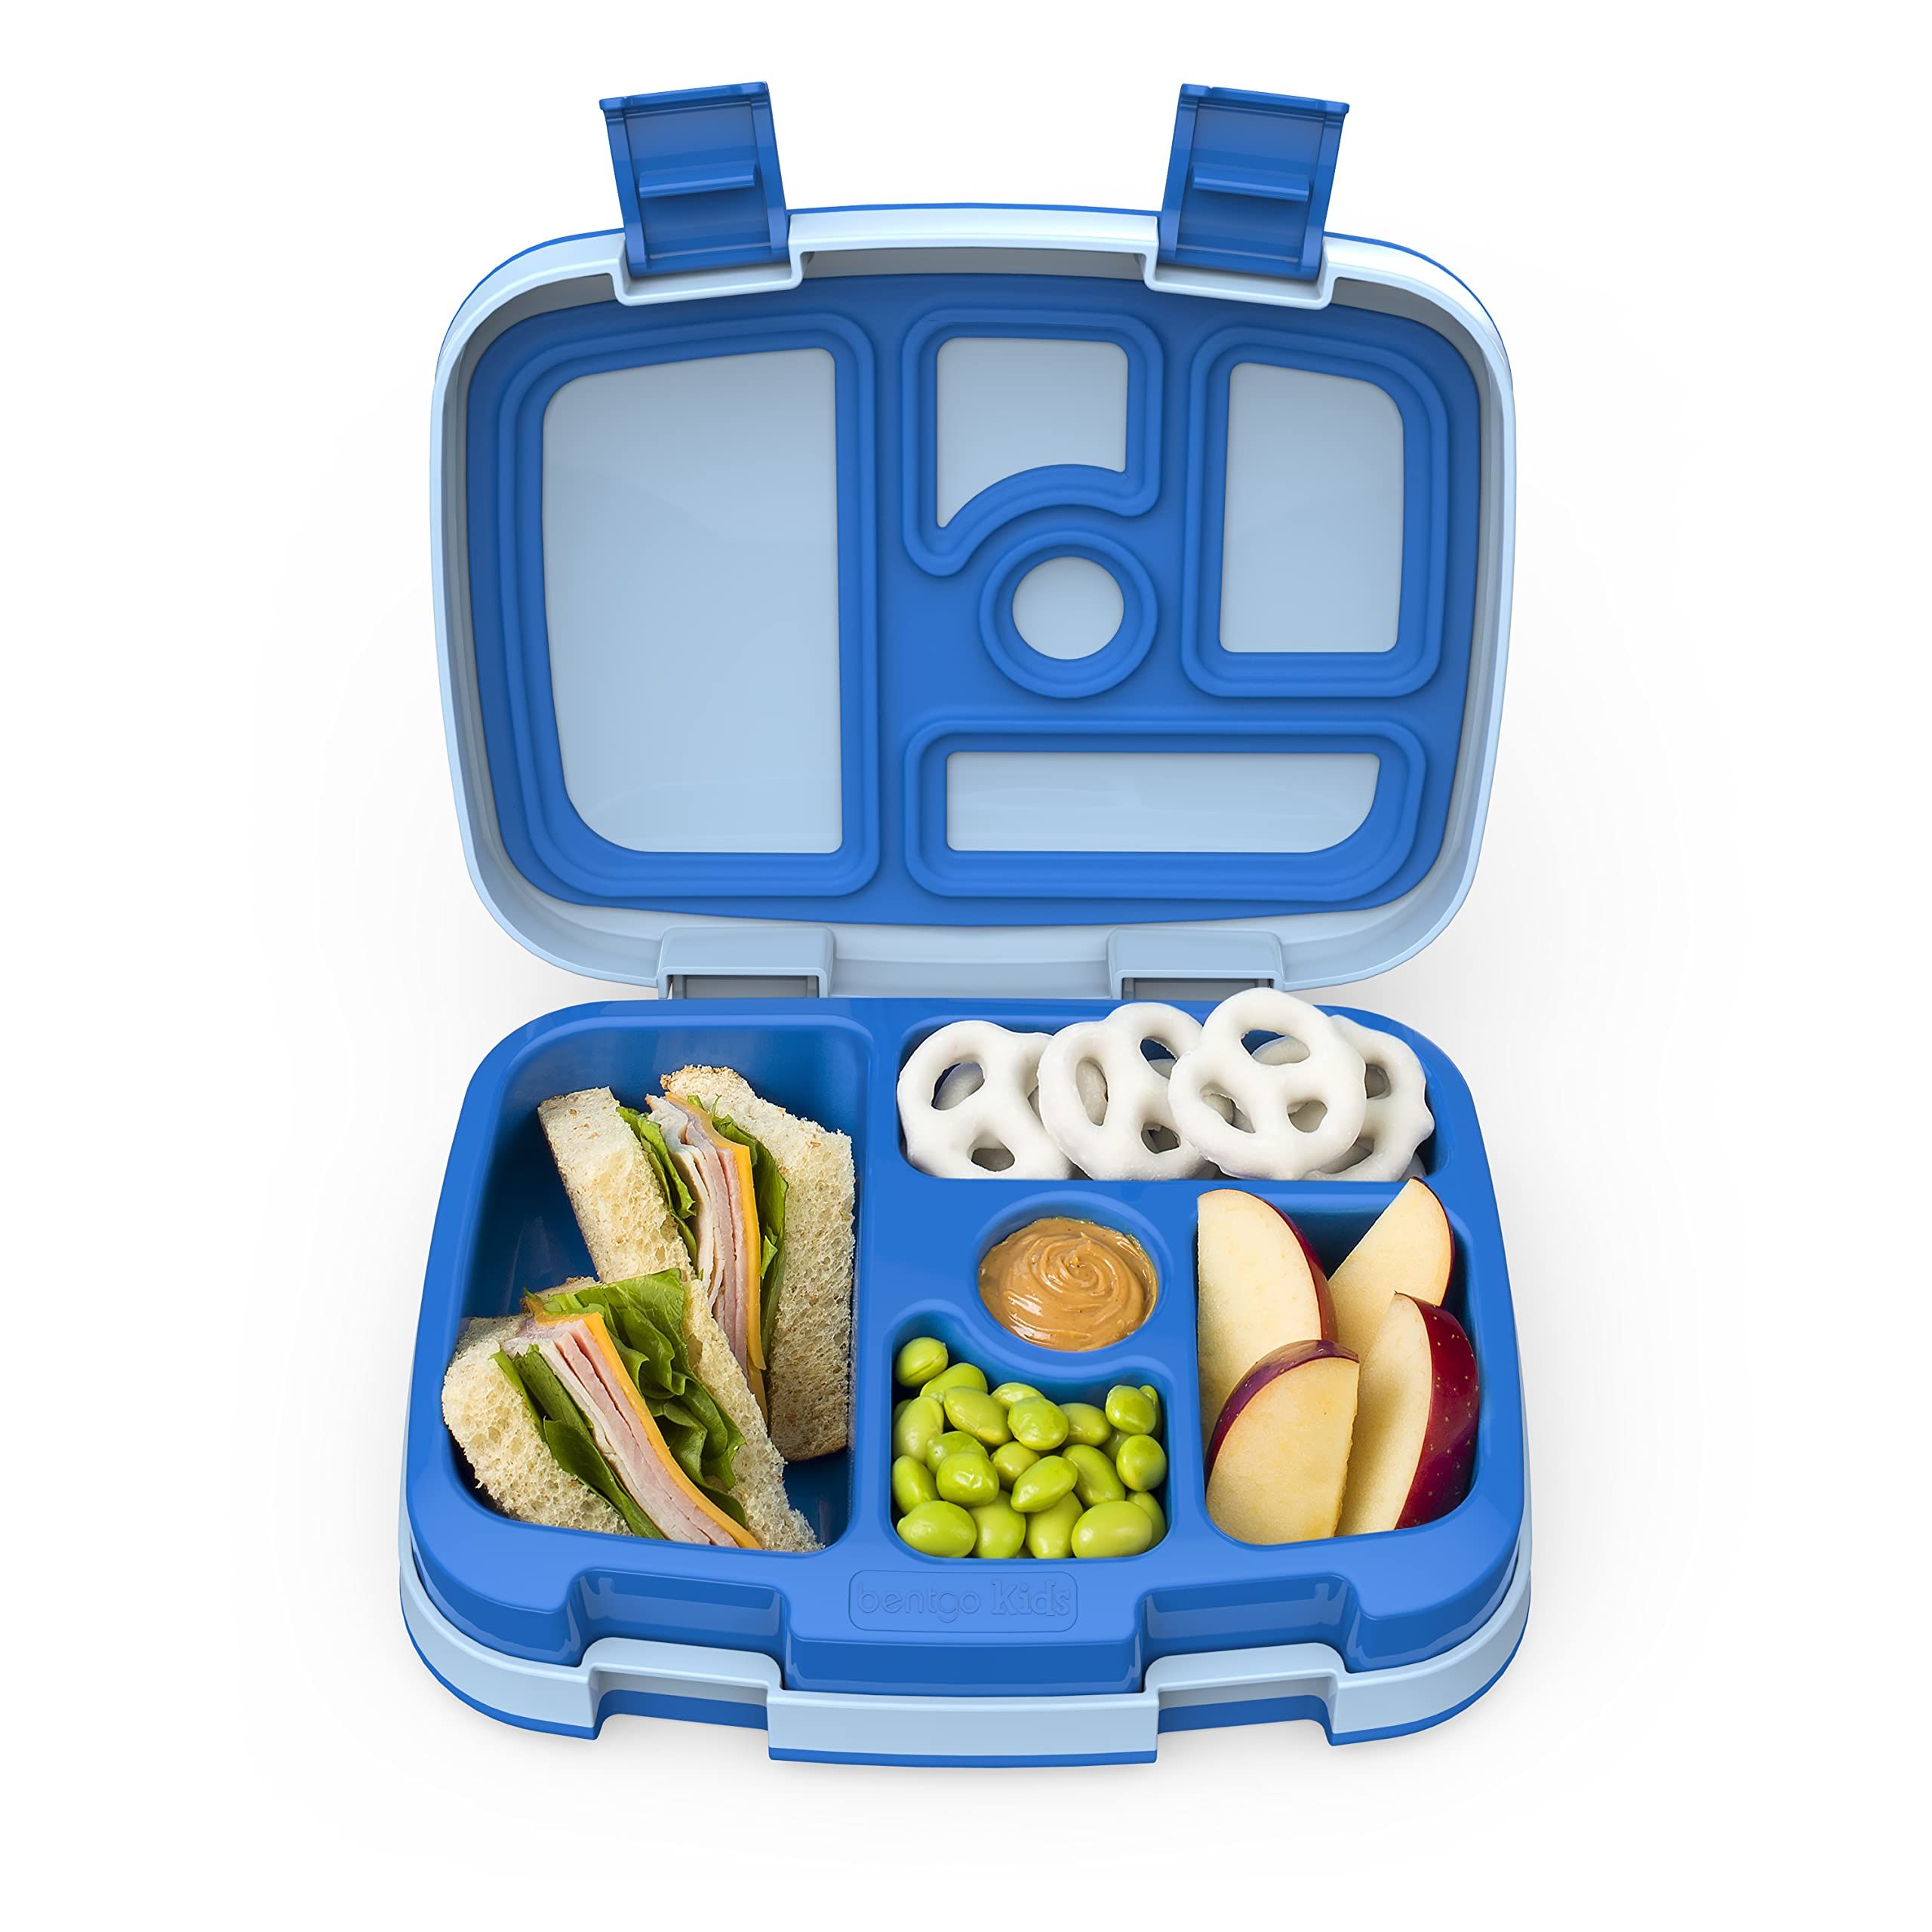 Prime Day 2021 lunchbox deals for preschool and kindergarten